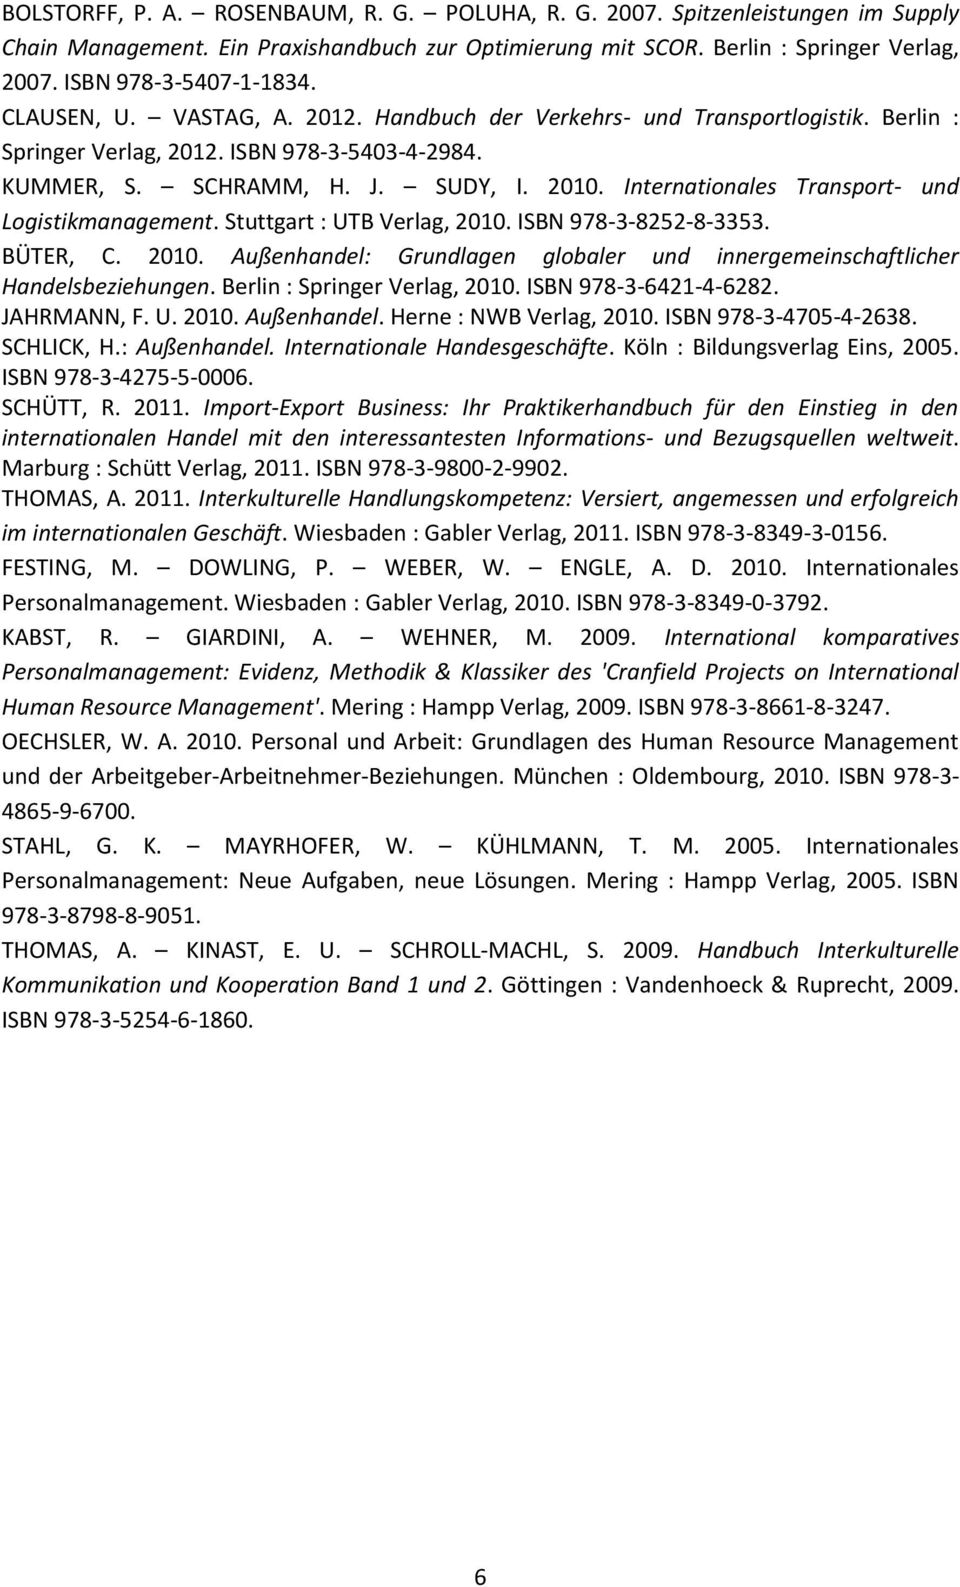 Internationales Transport- und Logistikmanagement. Stuttgart : UTB Verlag, 2010. ISBN 978-3-8252-8-3353. BÜTER, C. 2010. Außenhandel: Grundlagen globaler und innergemeinschaftlicher Handelsbeziehungen.